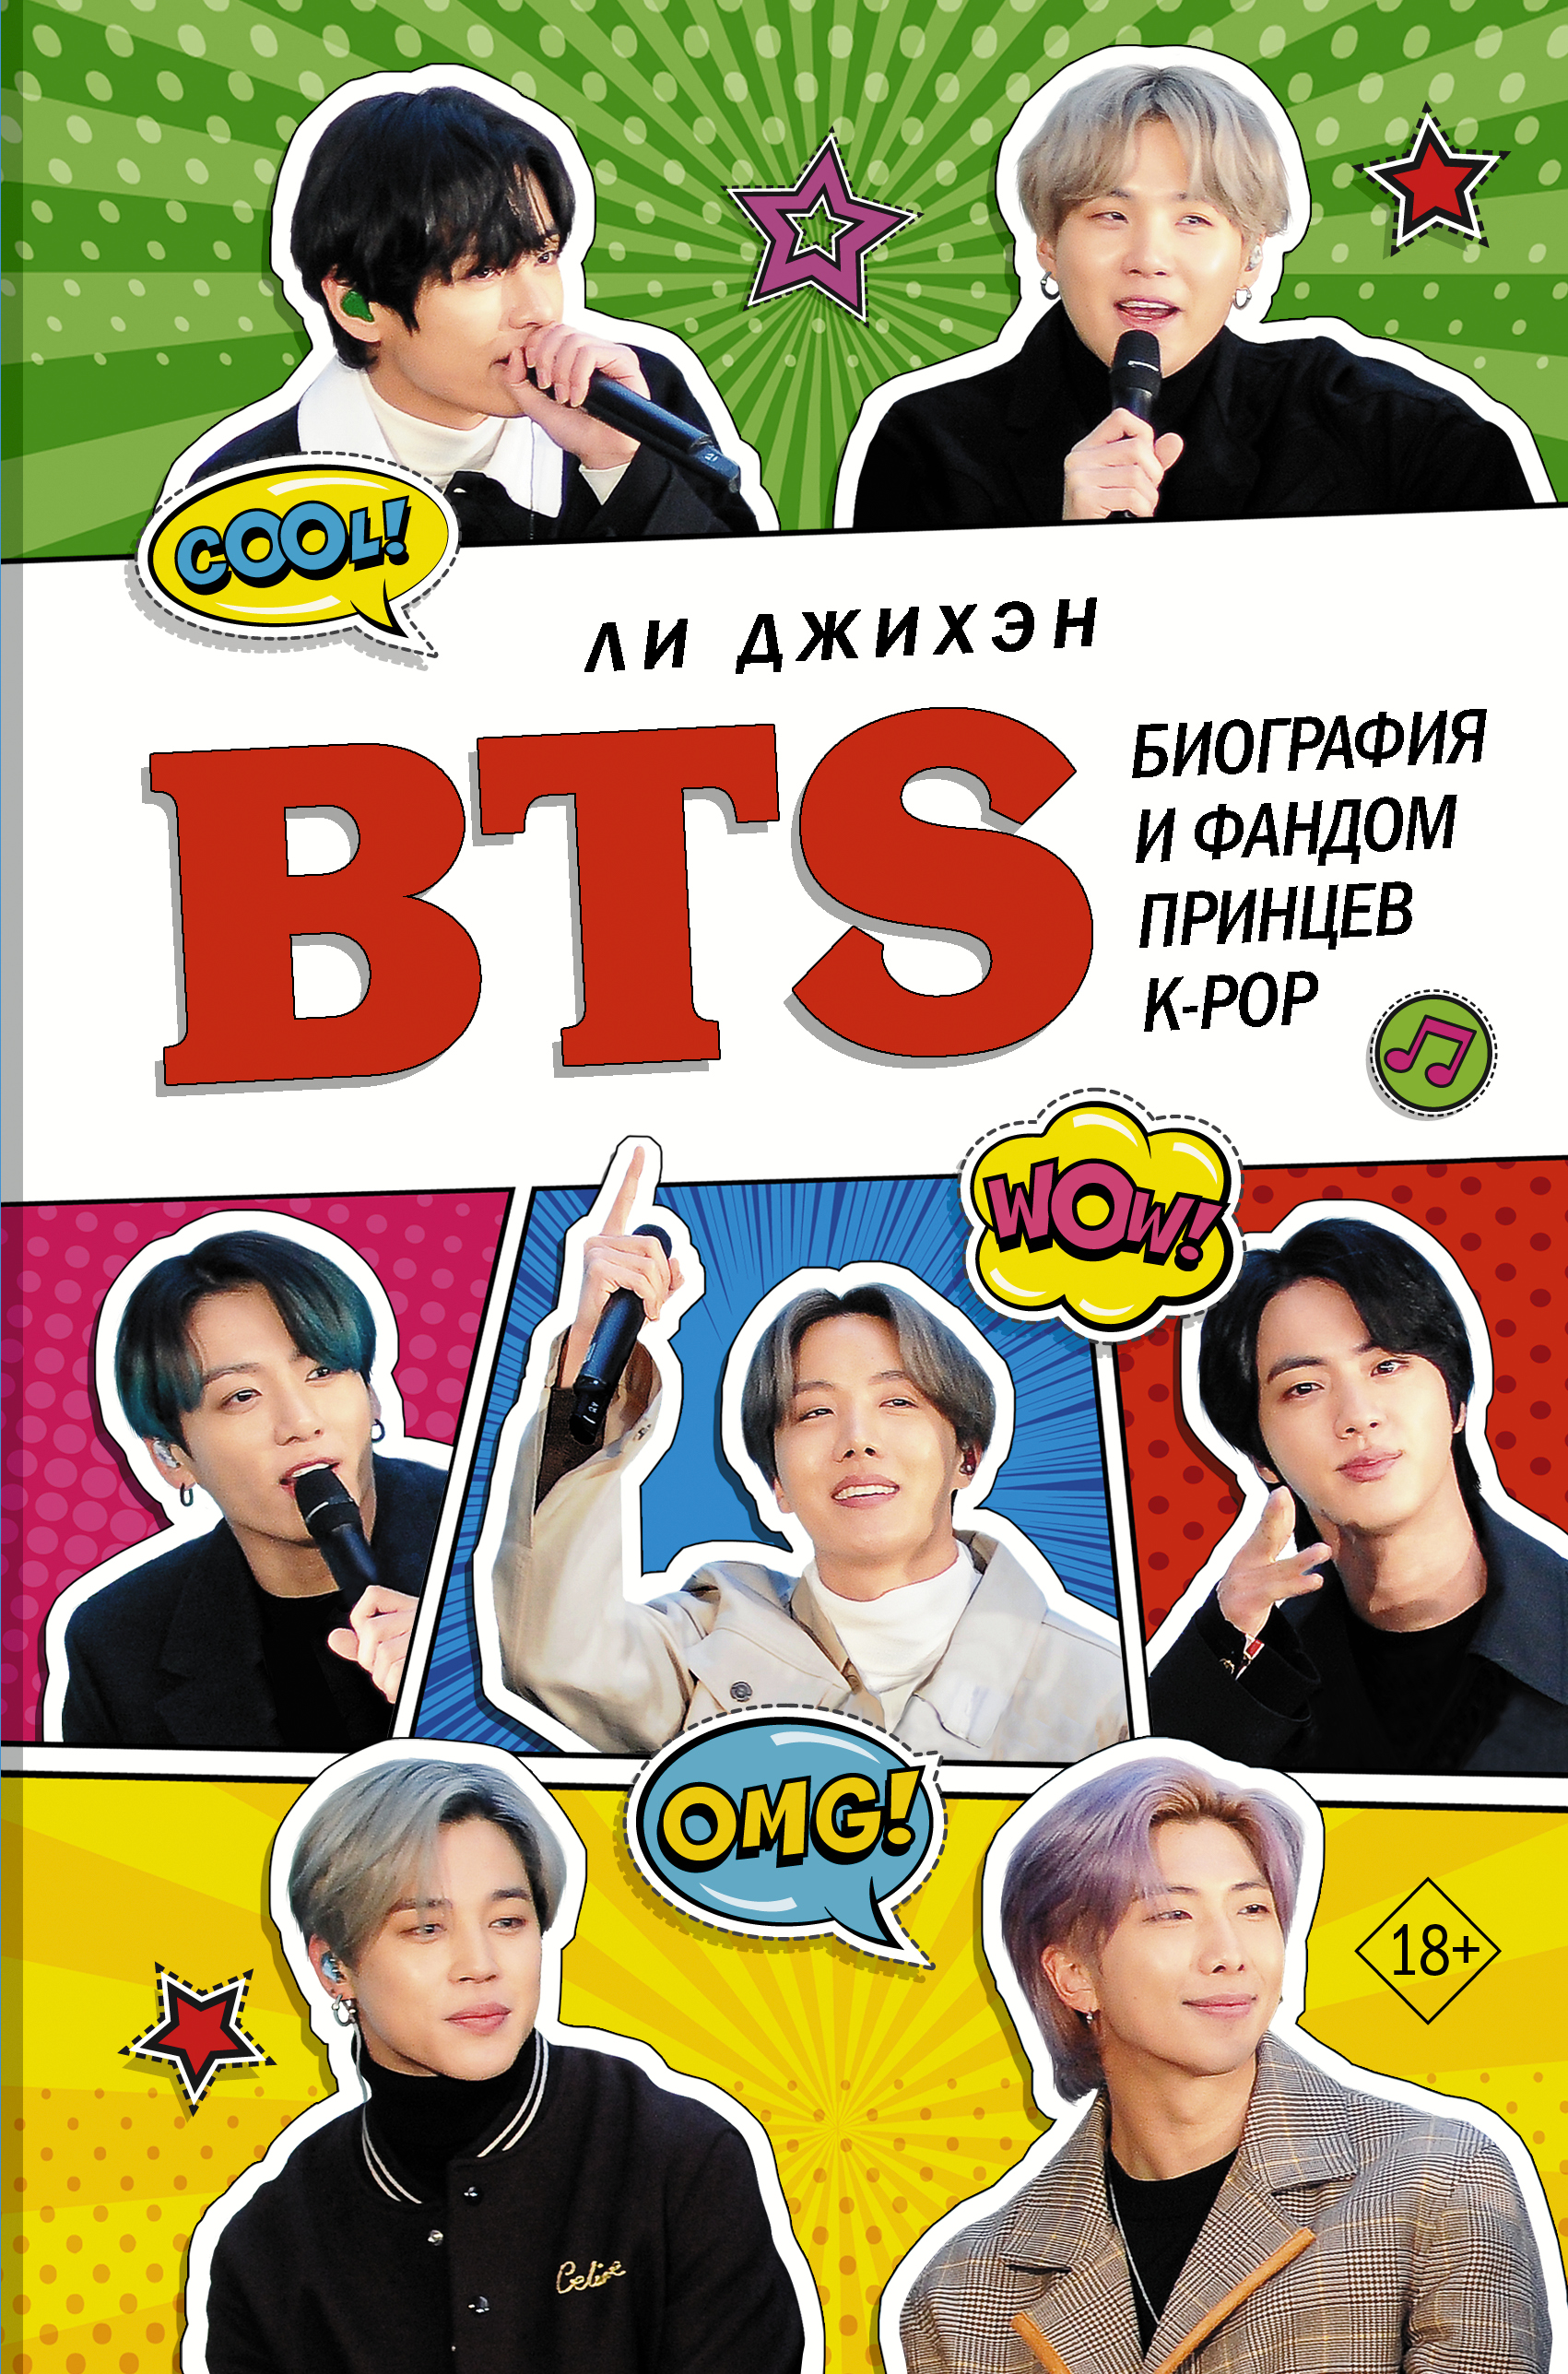 BTS. Биография и фандом принцев K-POP bts биография и фандом принцев k pop